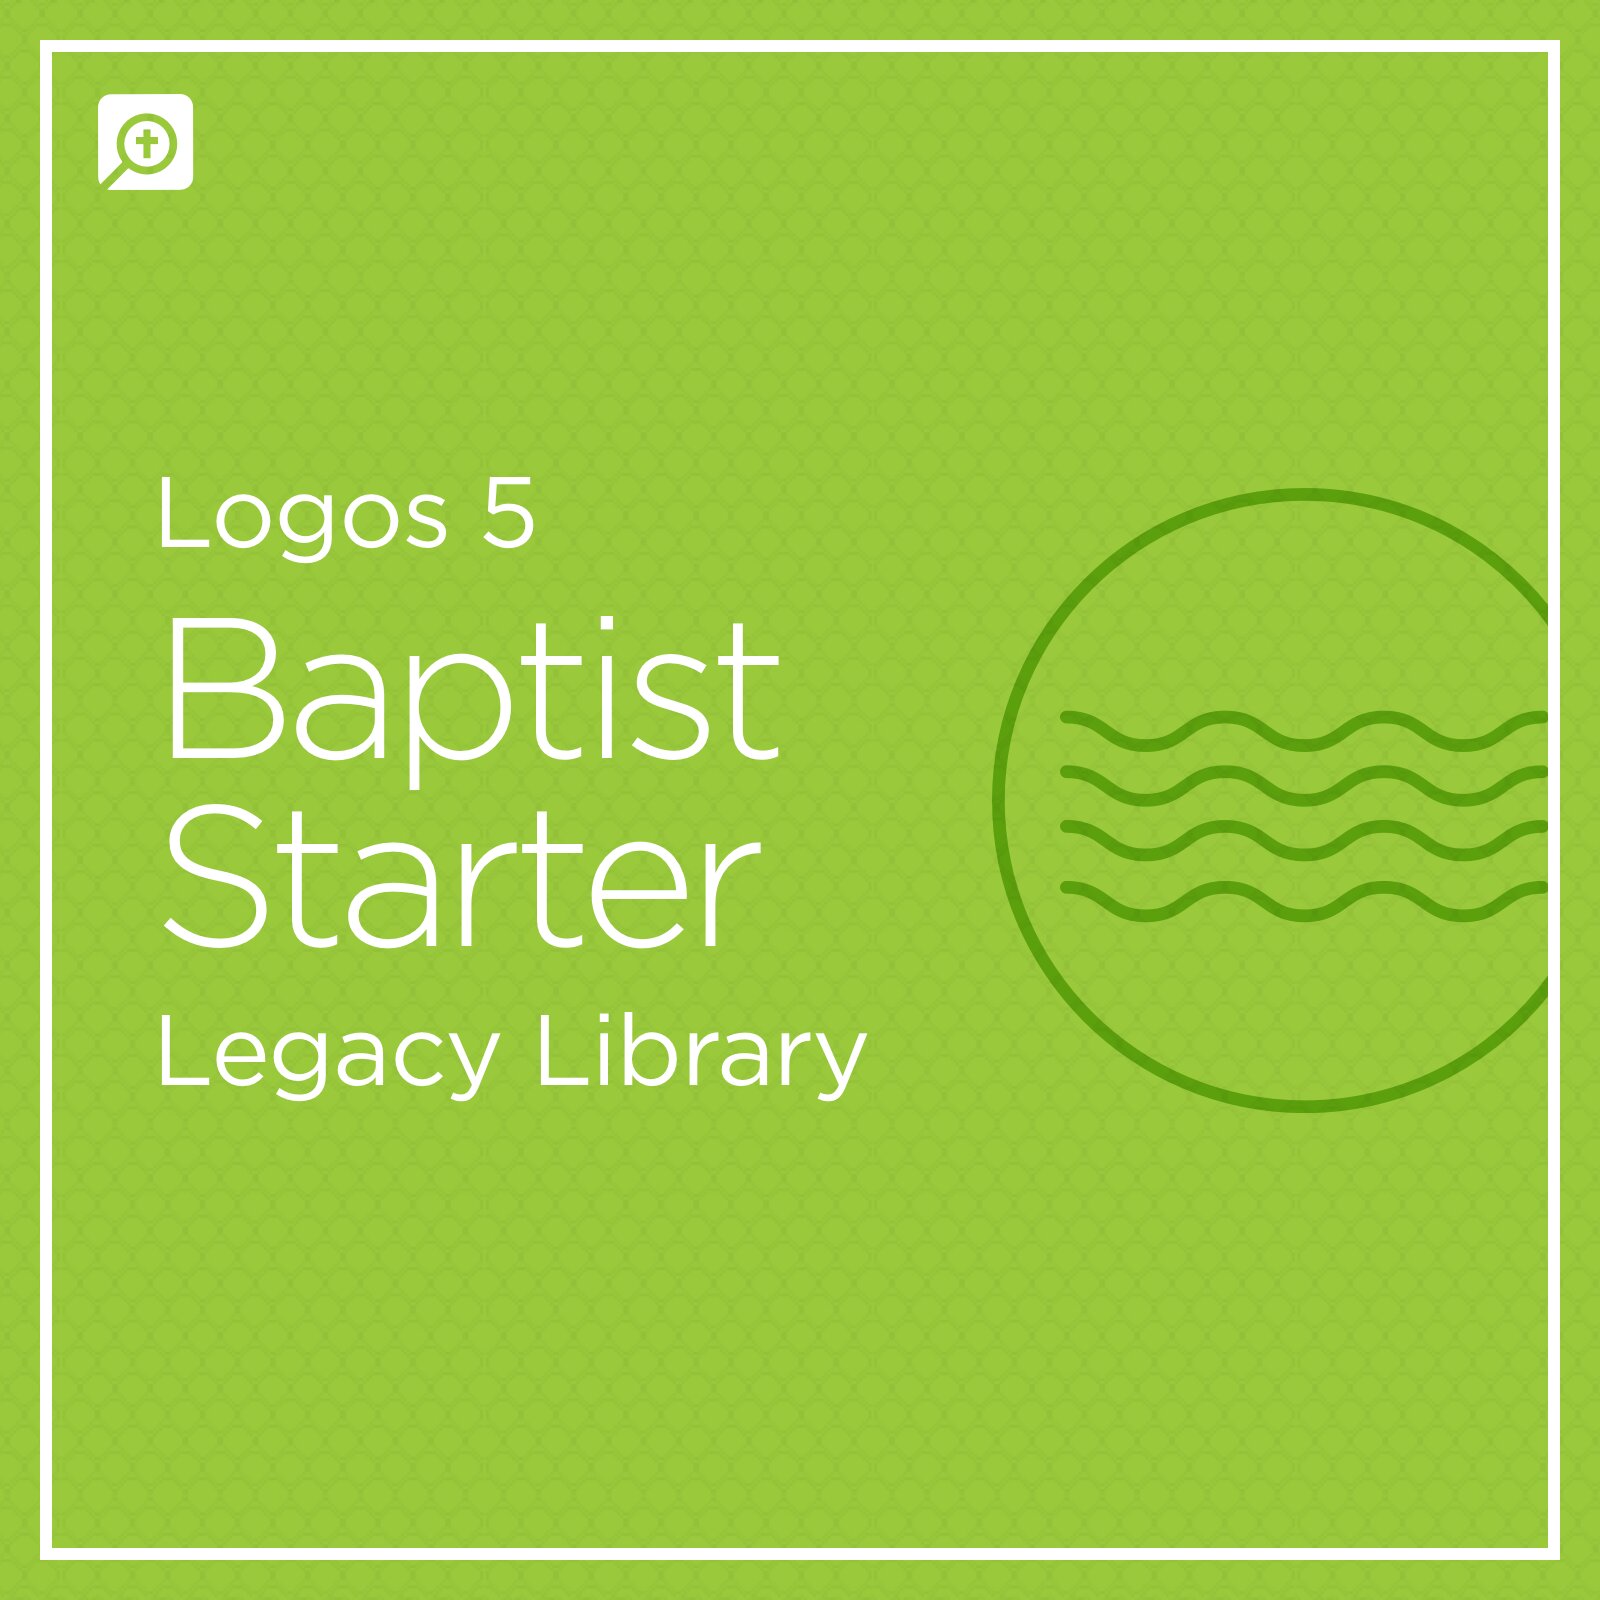 Logos 5 Baptist Starter Legacy Library